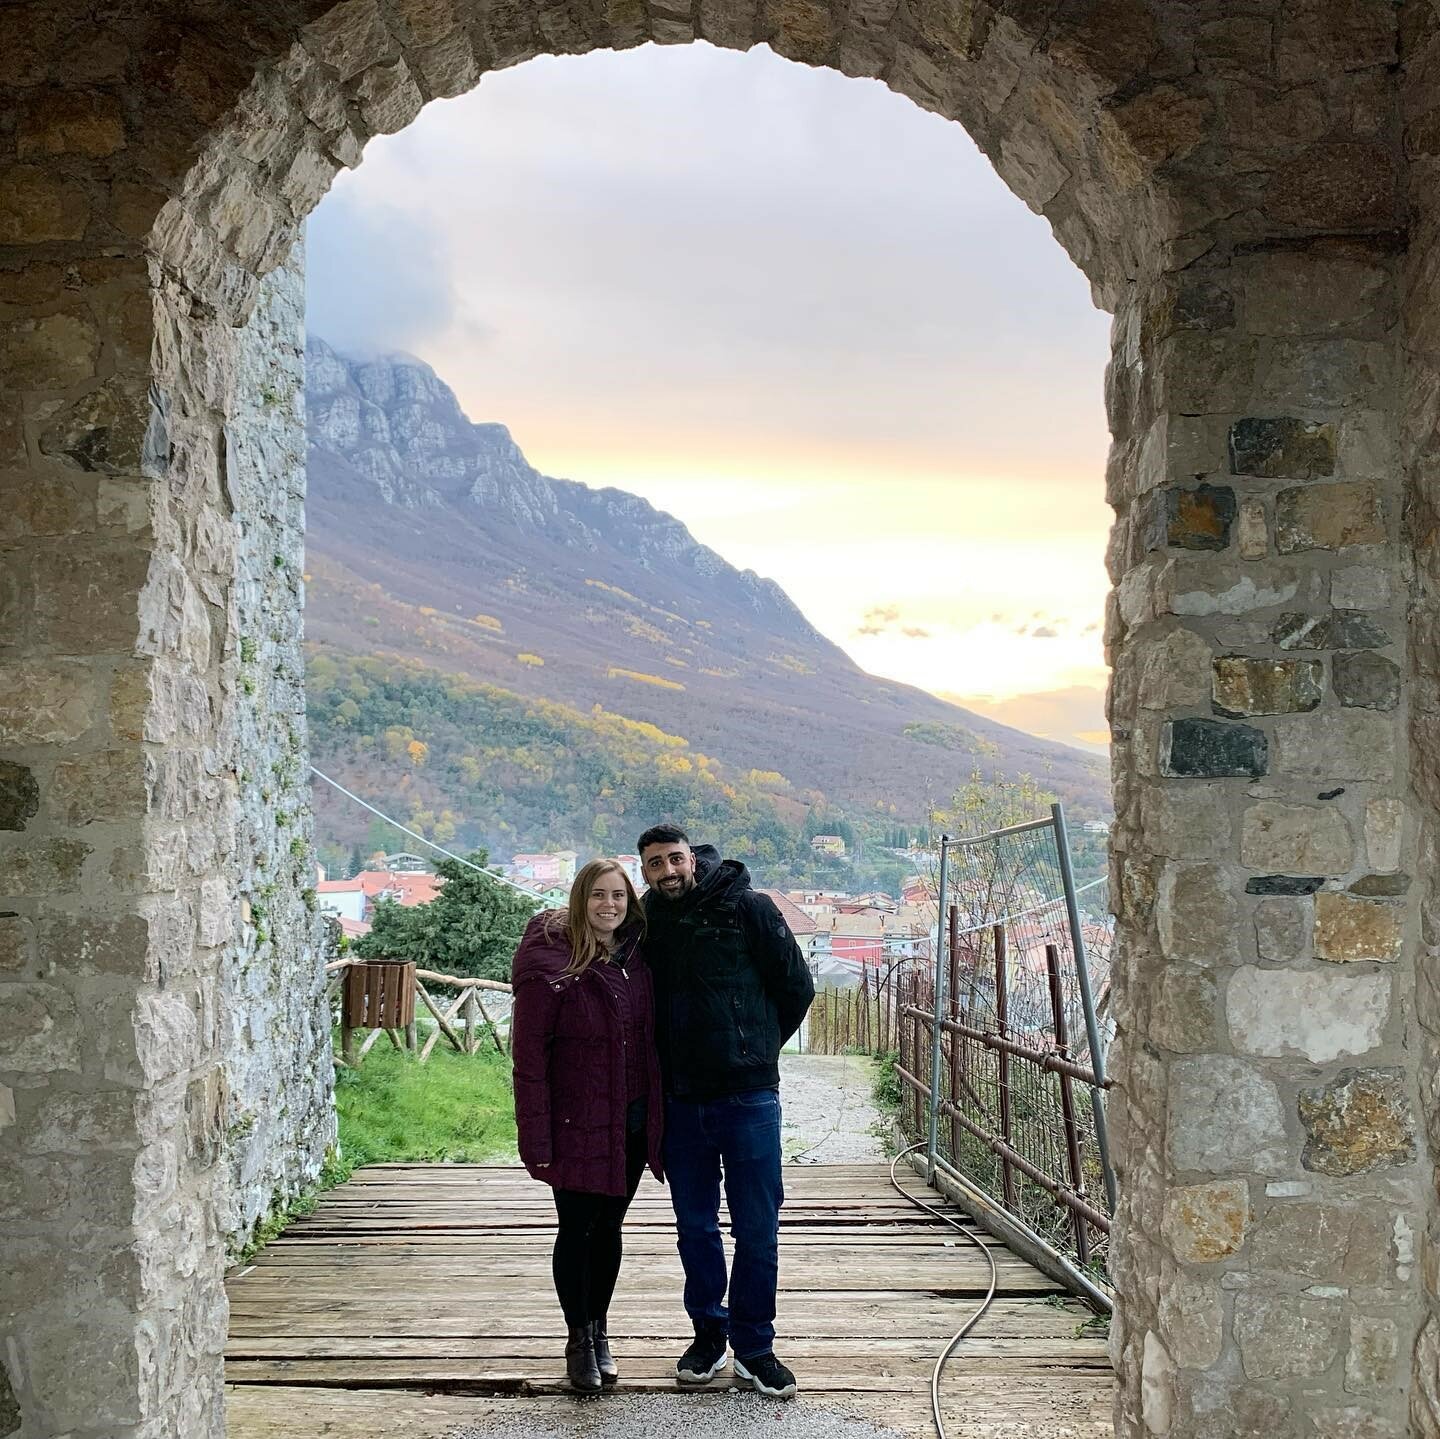 Alysha and Giovanni Prignano at a castle in Sicignano Degli Alburni, Italy.